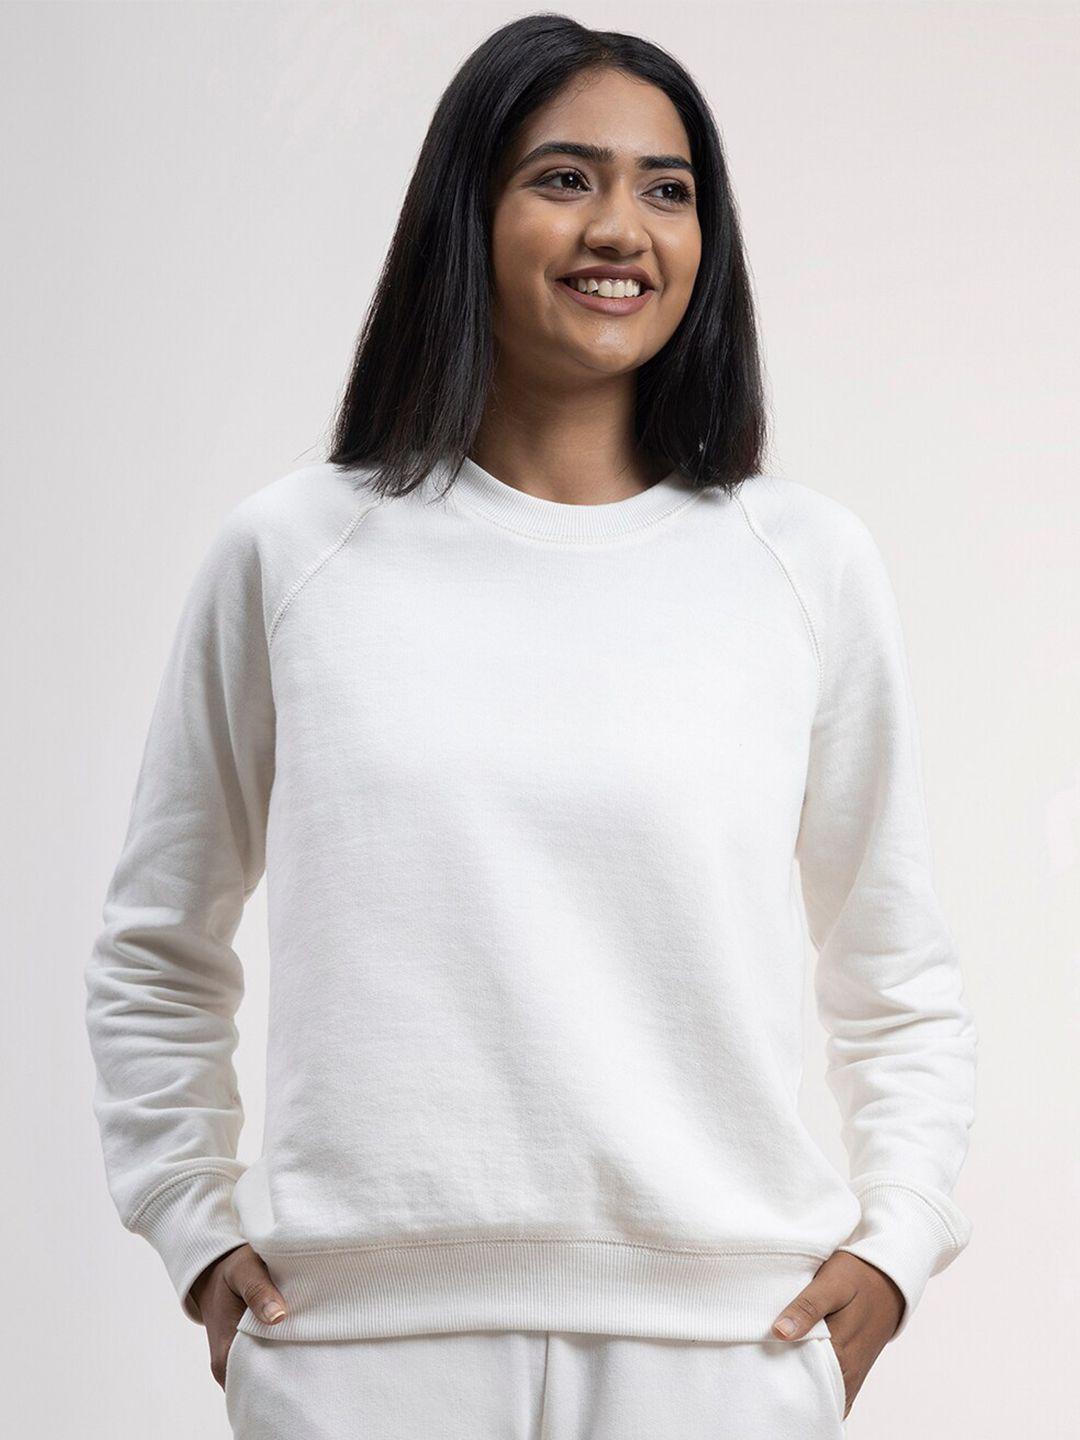 fablestreet-women-off-white-round-neck-sweatshirt